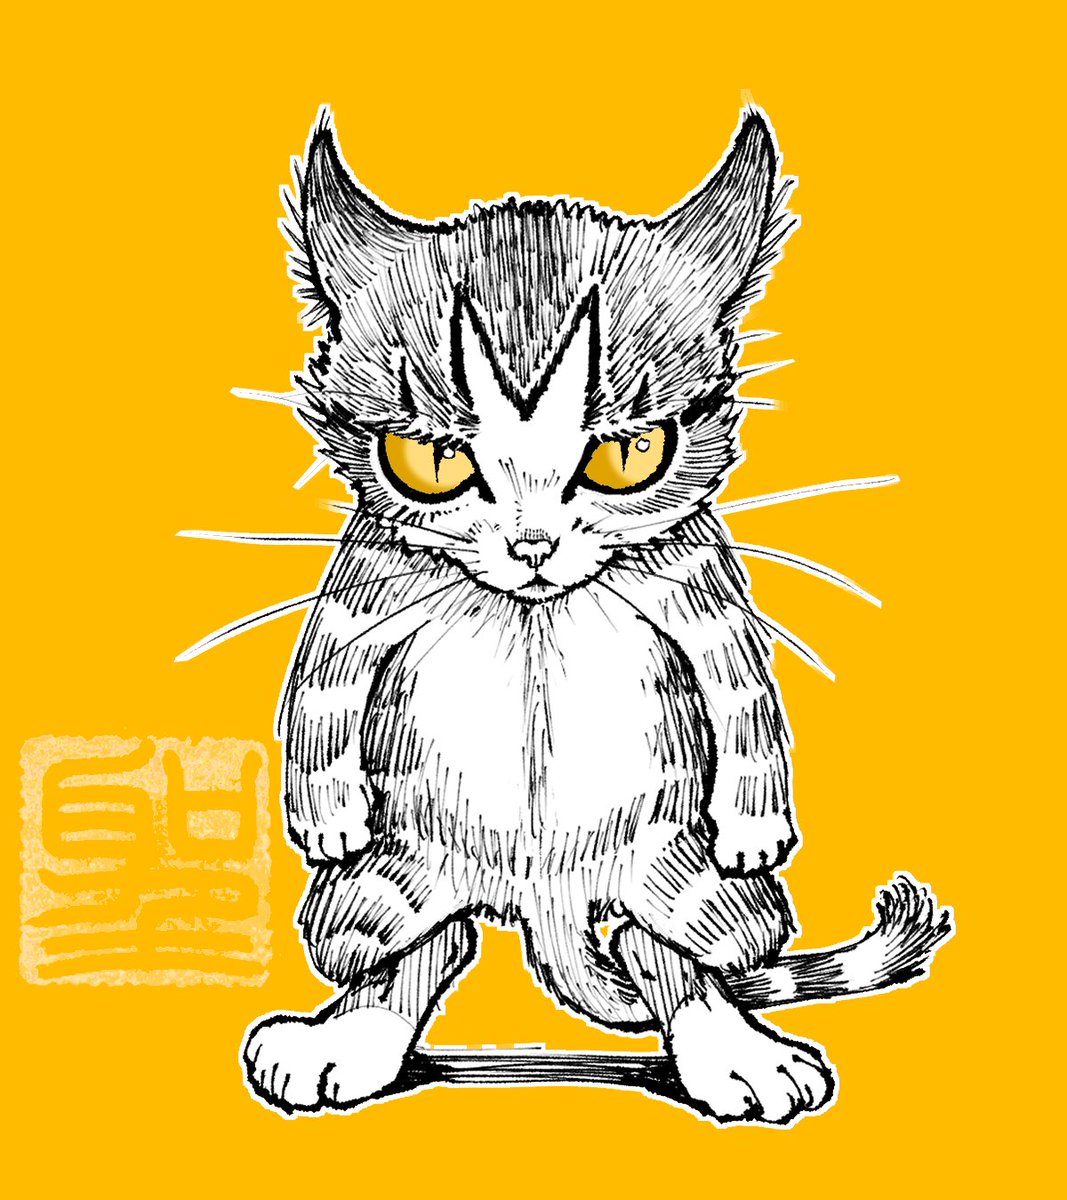 「おはこんばんちは!「どうにゃ、怖いにゃろ?」 」|CatCuts ✴︎日々猫絵描く漫画編集者のイラスト